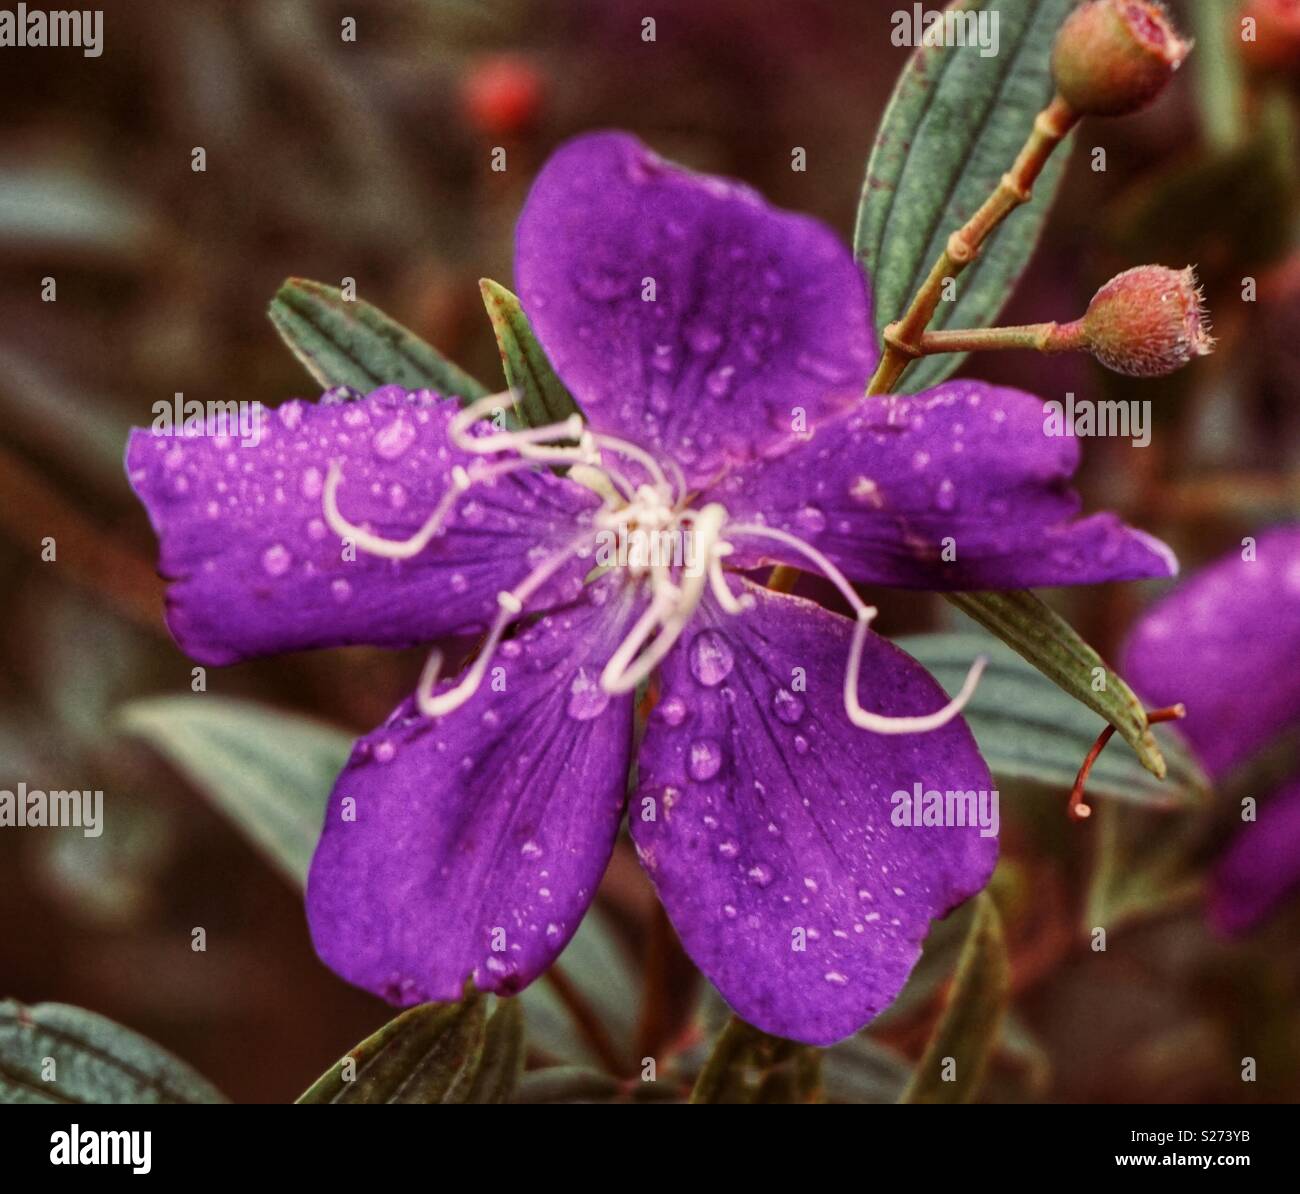 Purple princess flower Stock Photo